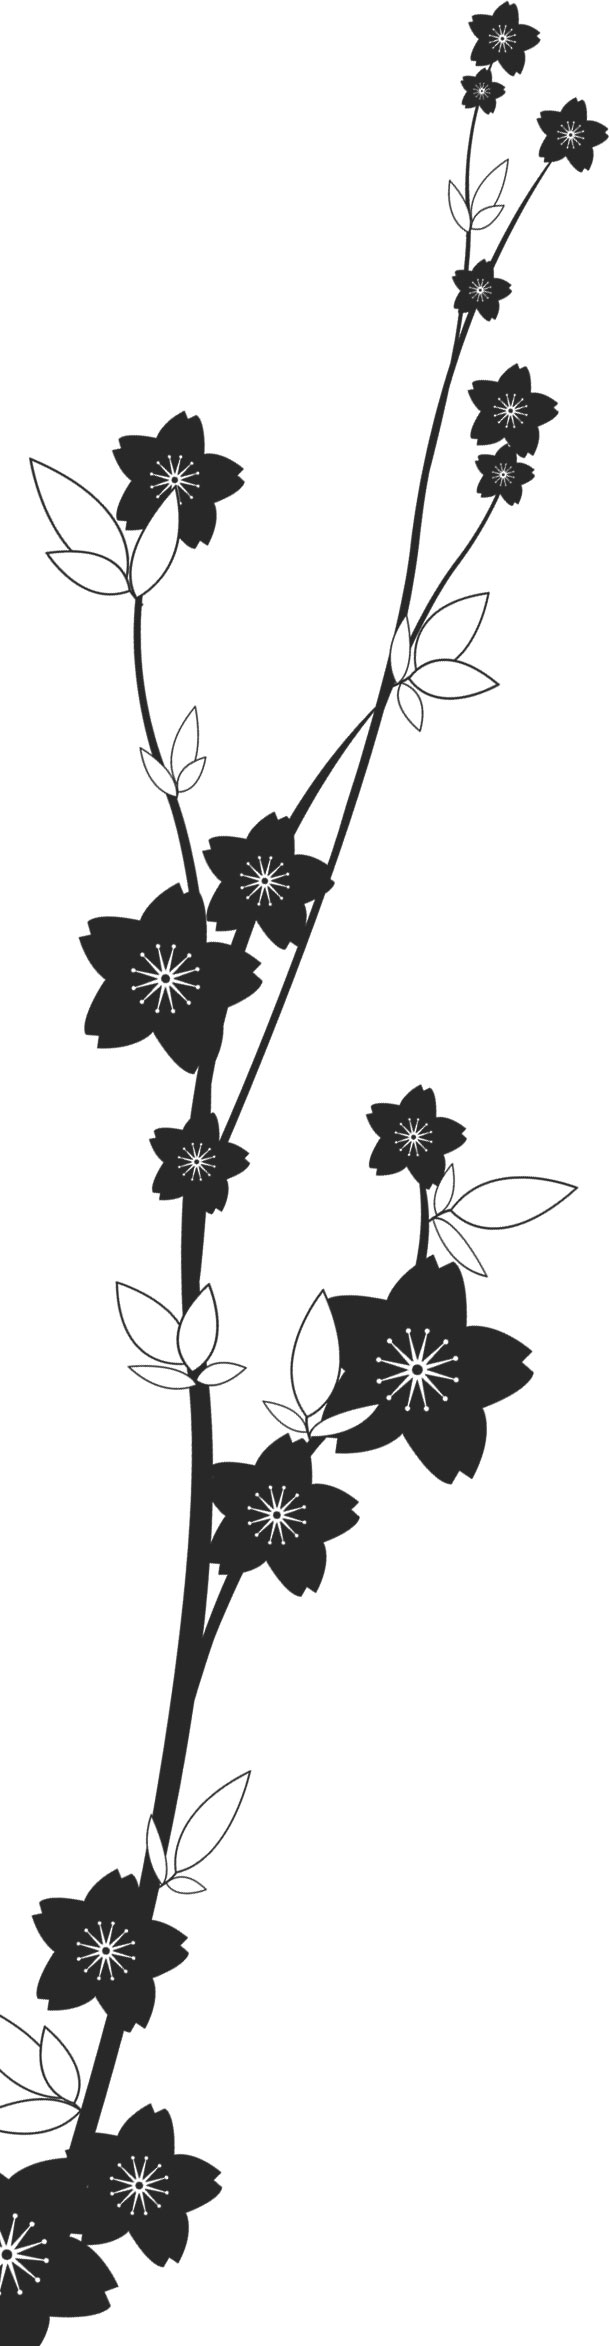 花のイラスト フリー素材 白黒 モノクロno 616 白黒 茎葉 桜型